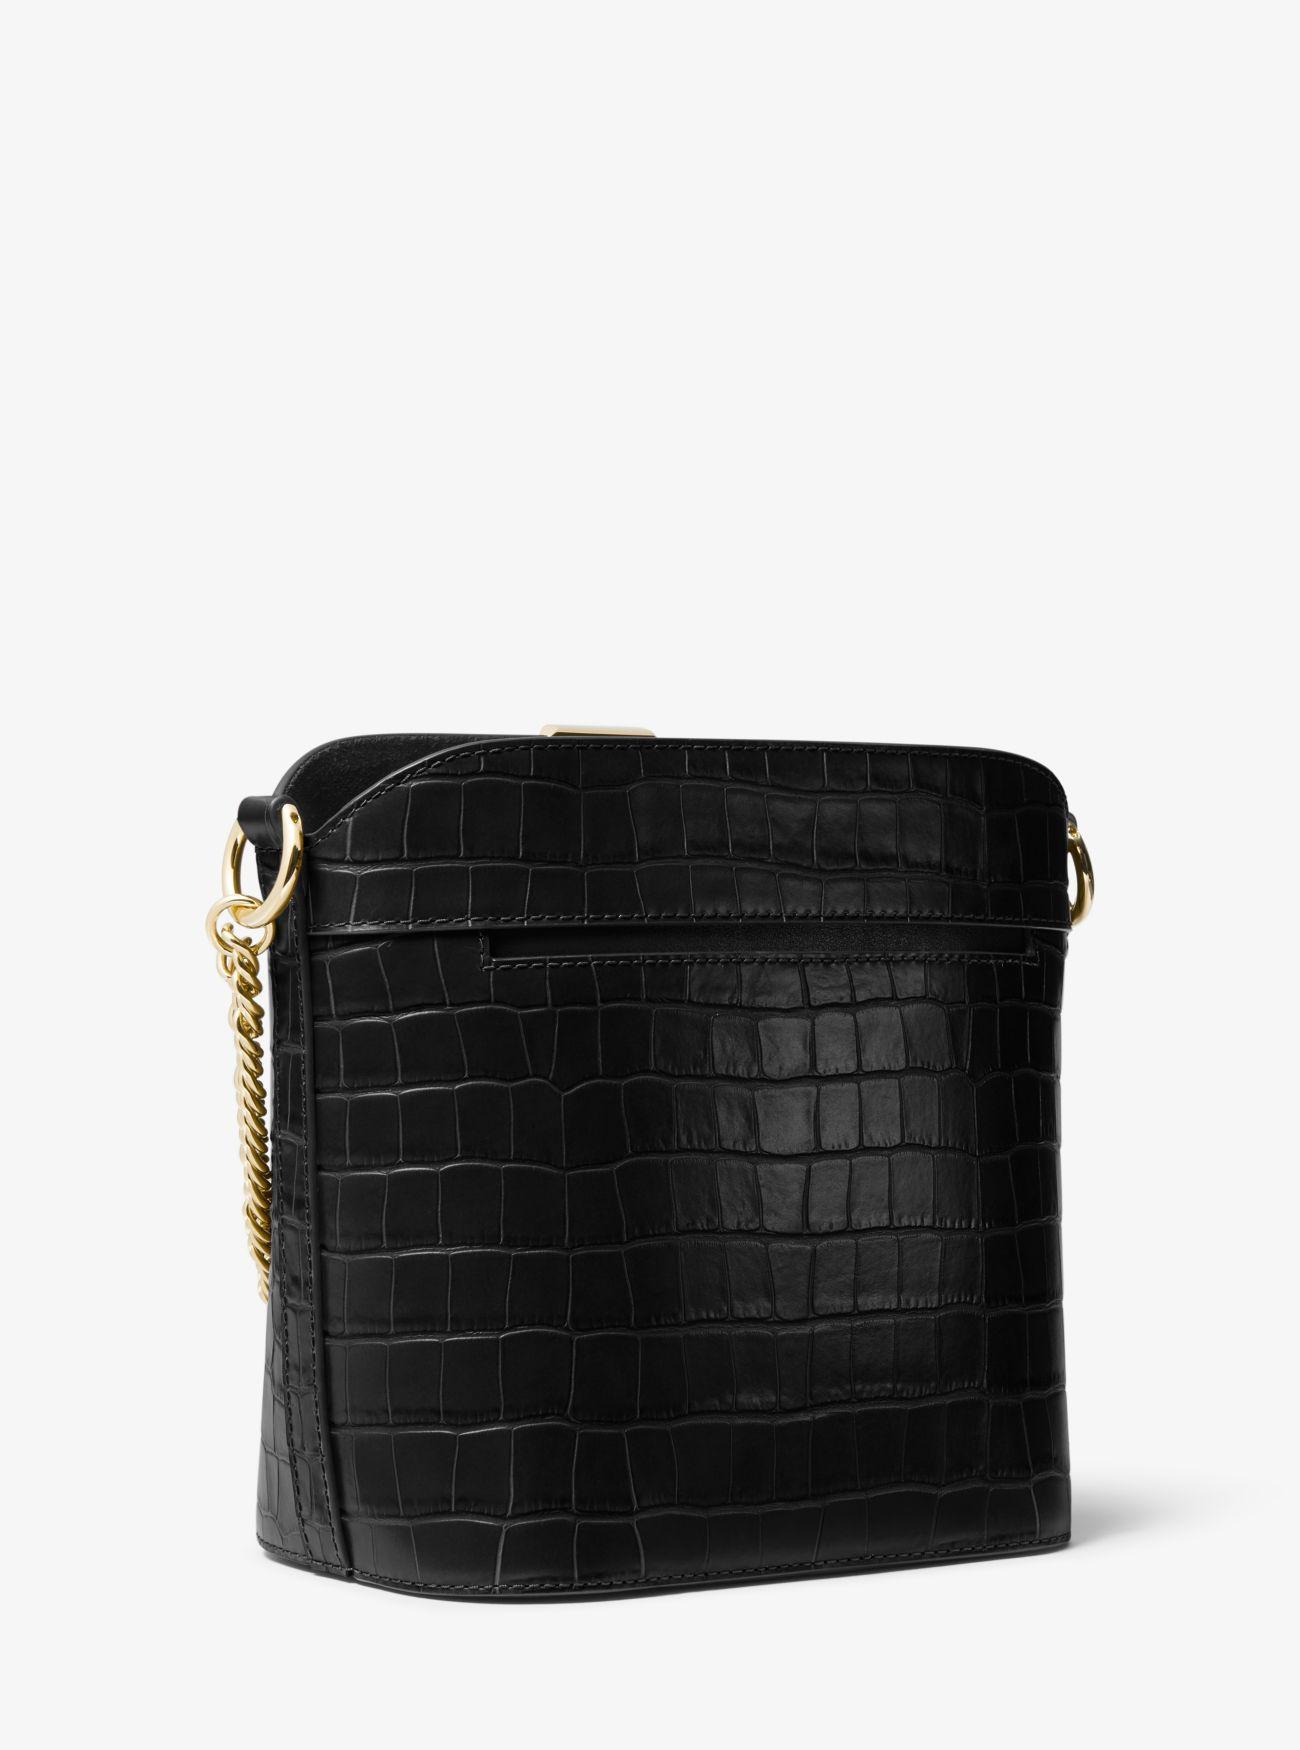 Michael Kors Bea Medium Crocodile-embossed Leather Bucket Shoulder Bag in Black - Lyst